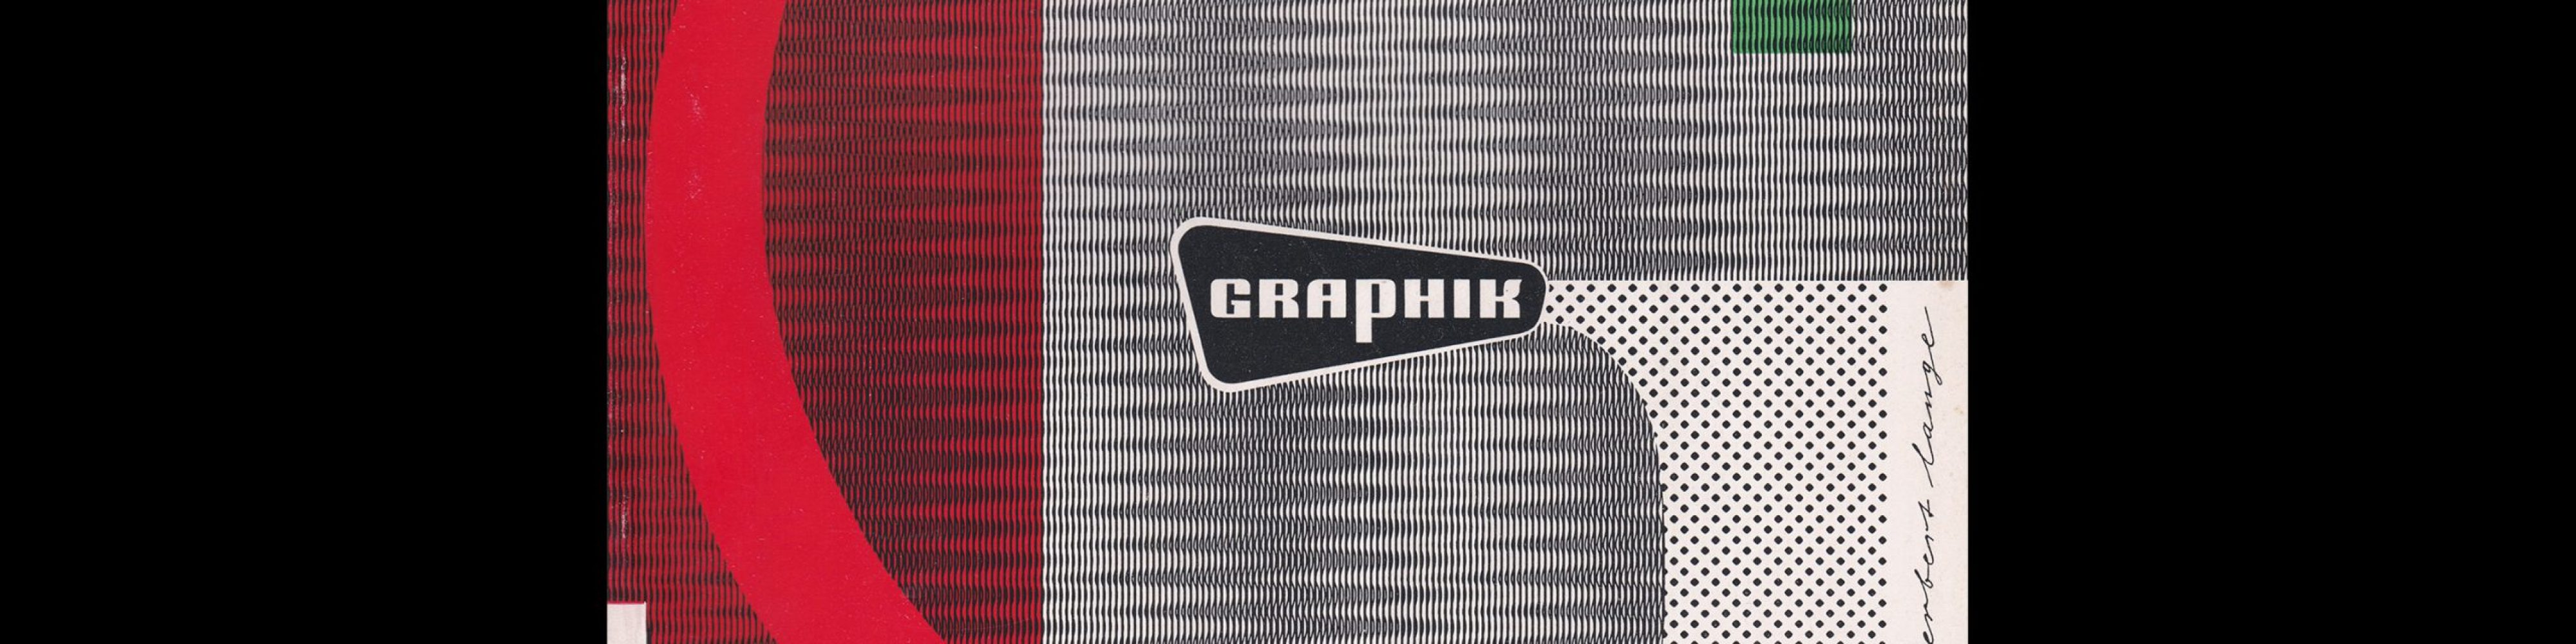 Graphik - Werbung + Formgebung, 2, 1954. Cover design Herbert Lange